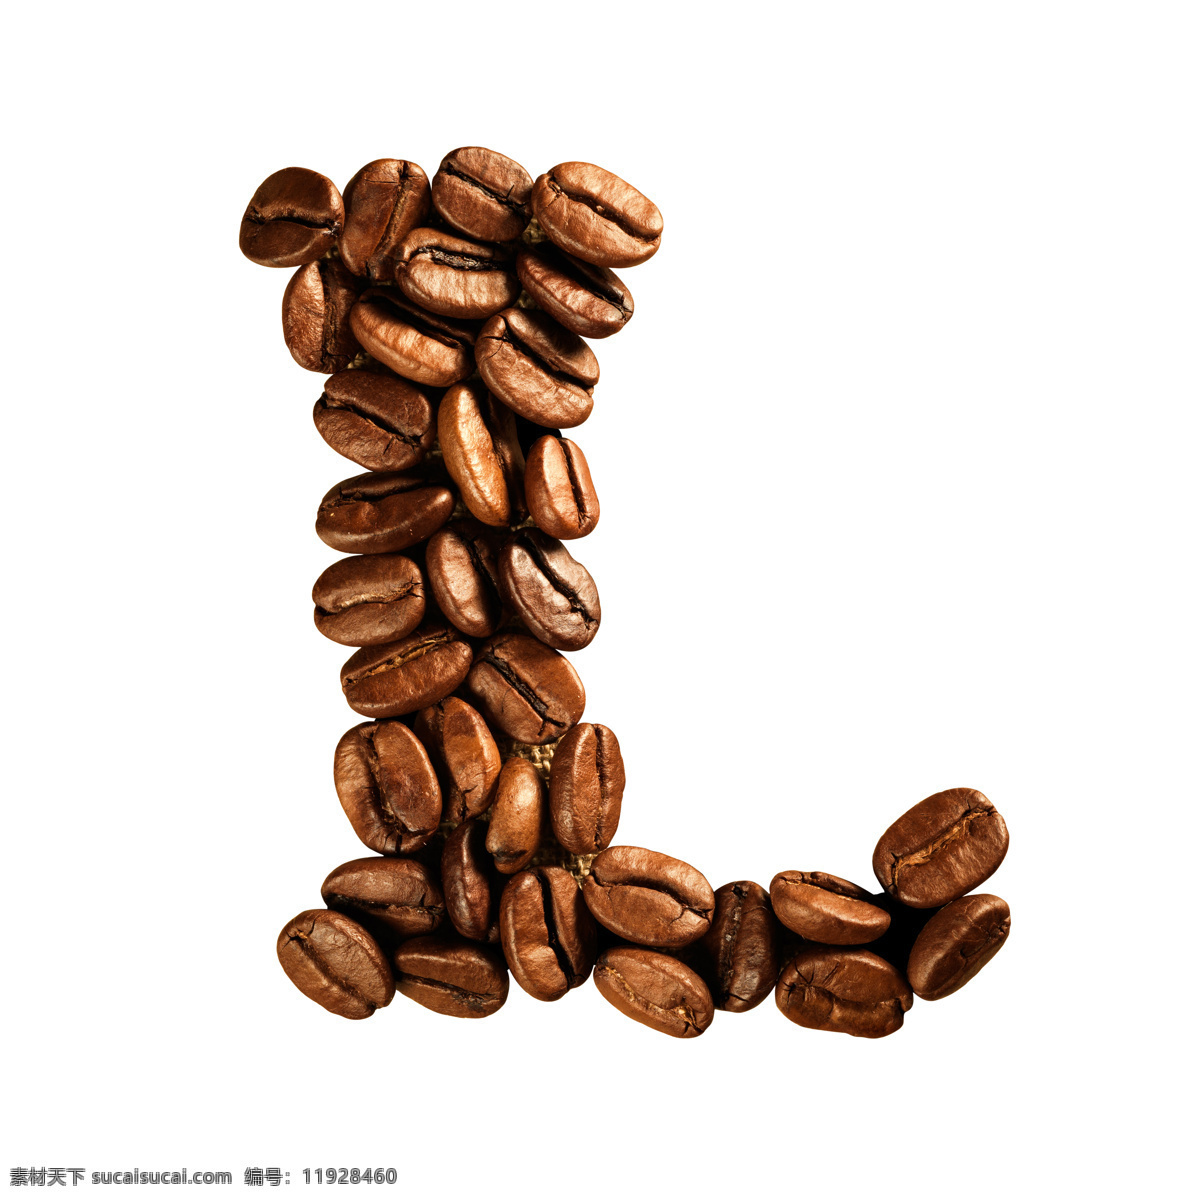 咖啡豆 组成 字母 l 咖啡 文字 艺术字体 书画文字 文化艺术 白色